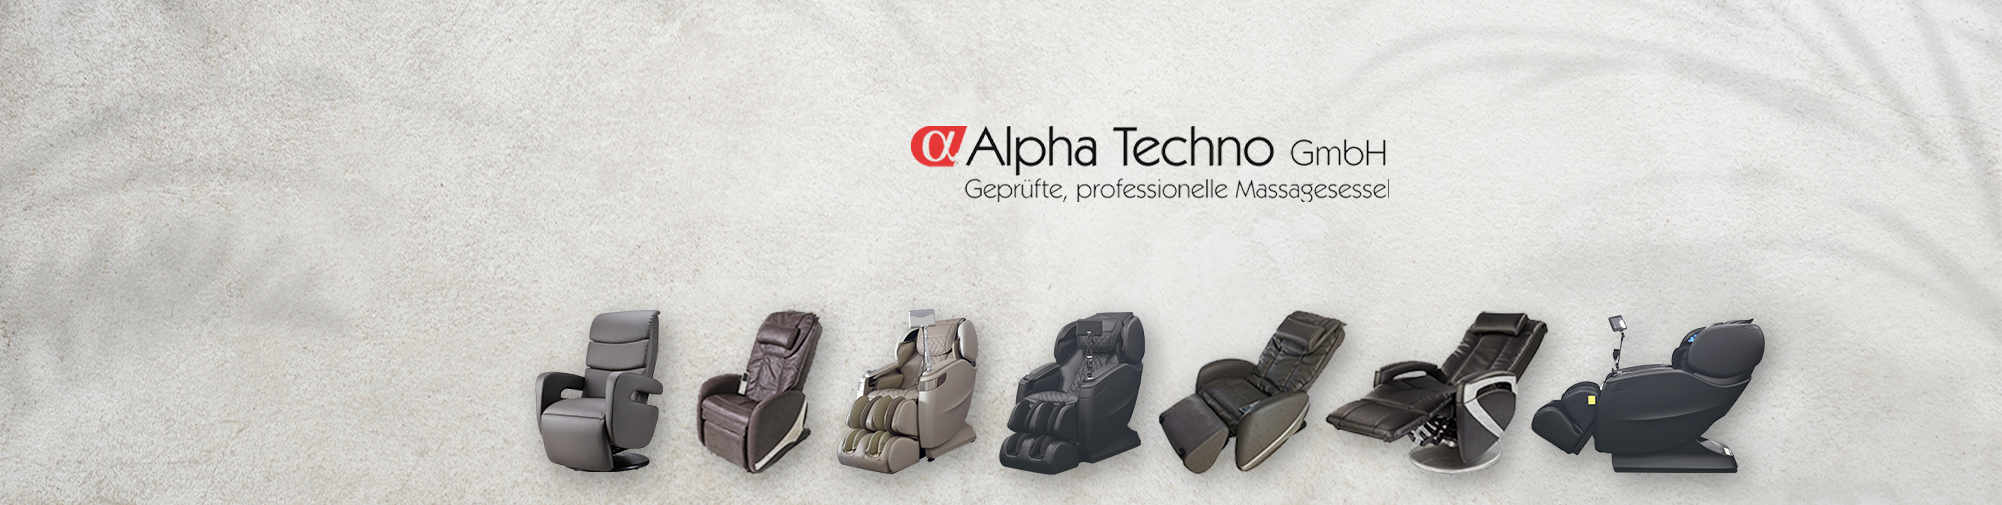 Alpha Techno - Numéro 1 européen | Fauteuils de massage Monde